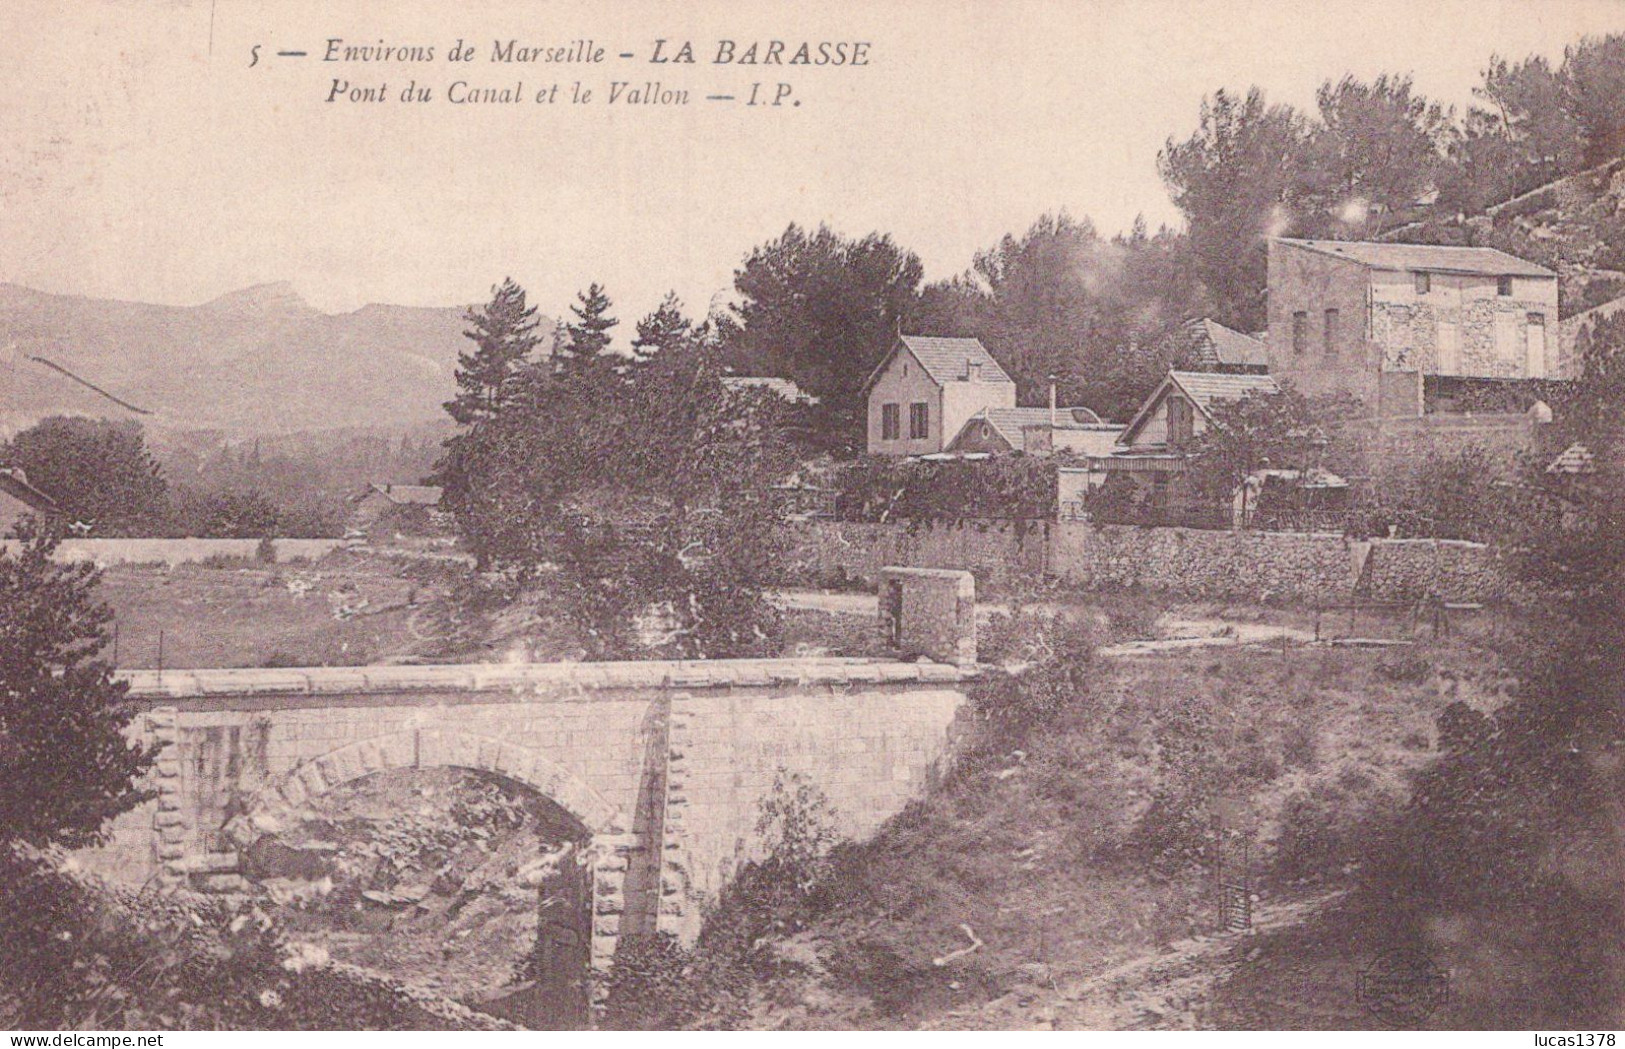 13 / MARSEILLE / LA BARASSE / PONT DU CANAL ET LE VALLON / IP 5 - Saint Marcel, La Barasse, St Menet